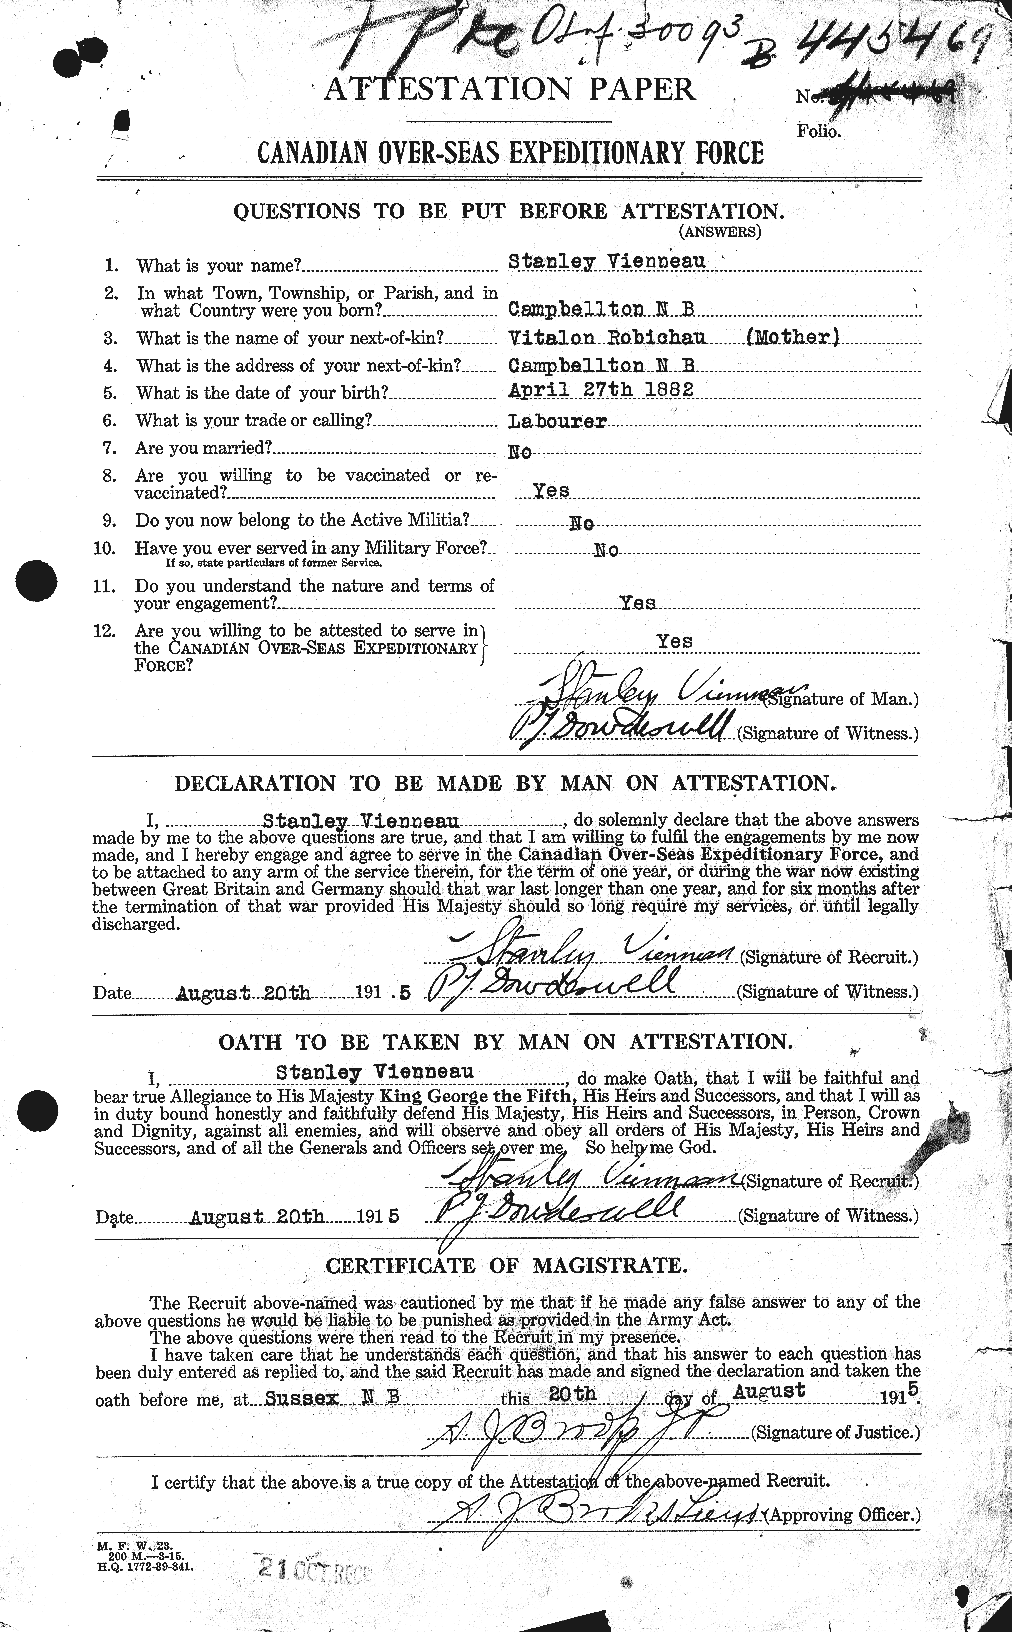 Dossiers du Personnel de la Première Guerre mondiale - CEC 652383a